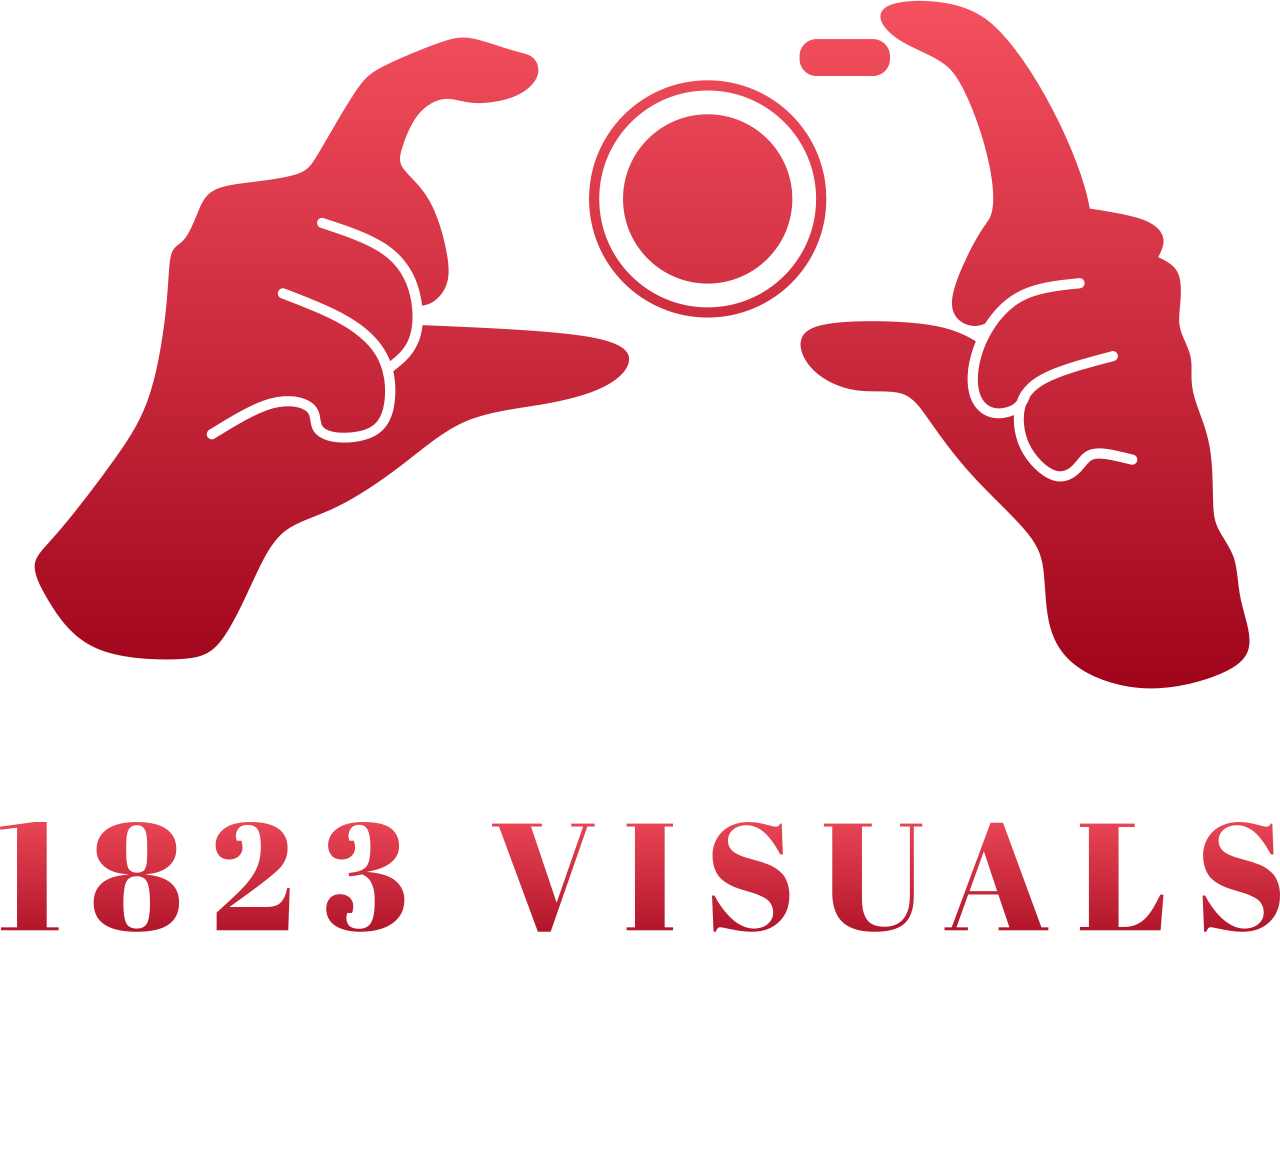 1823 Visuals's logo